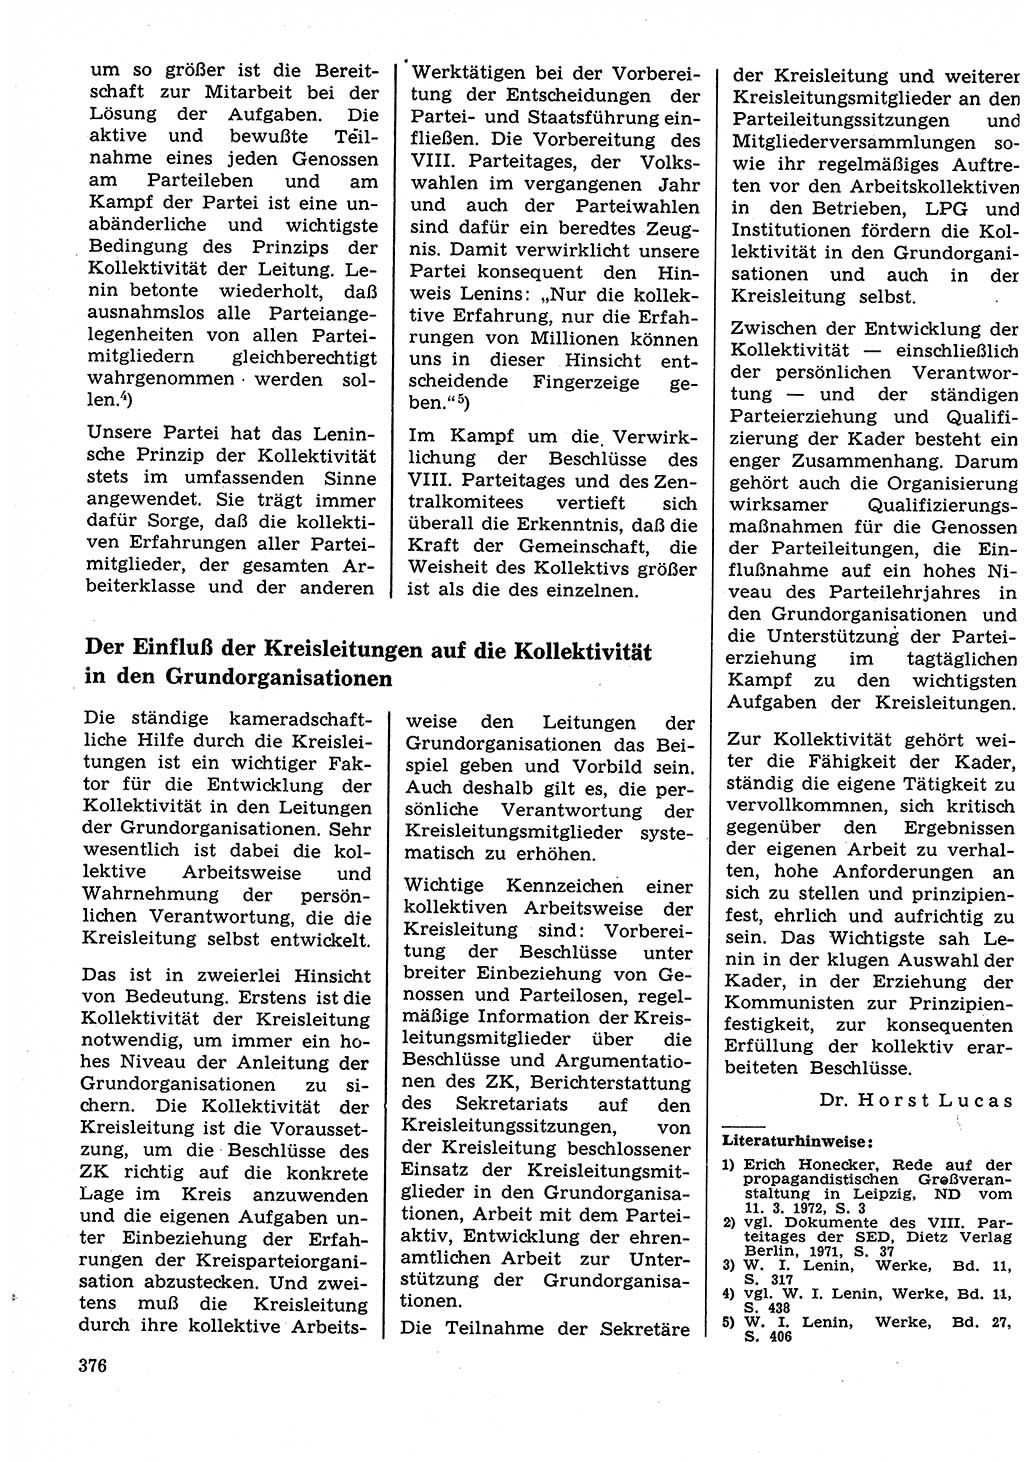 Neuer Weg (NW), Organ des Zentralkomitees (ZK) der SED (Sozialistische Einheitspartei Deutschlands) für Fragen des Parteilebens, 27. Jahrgang [Deutsche Demokratische Republik (DDR)] 1972, Seite 376 (NW ZK SED DDR 1972, S. 376)